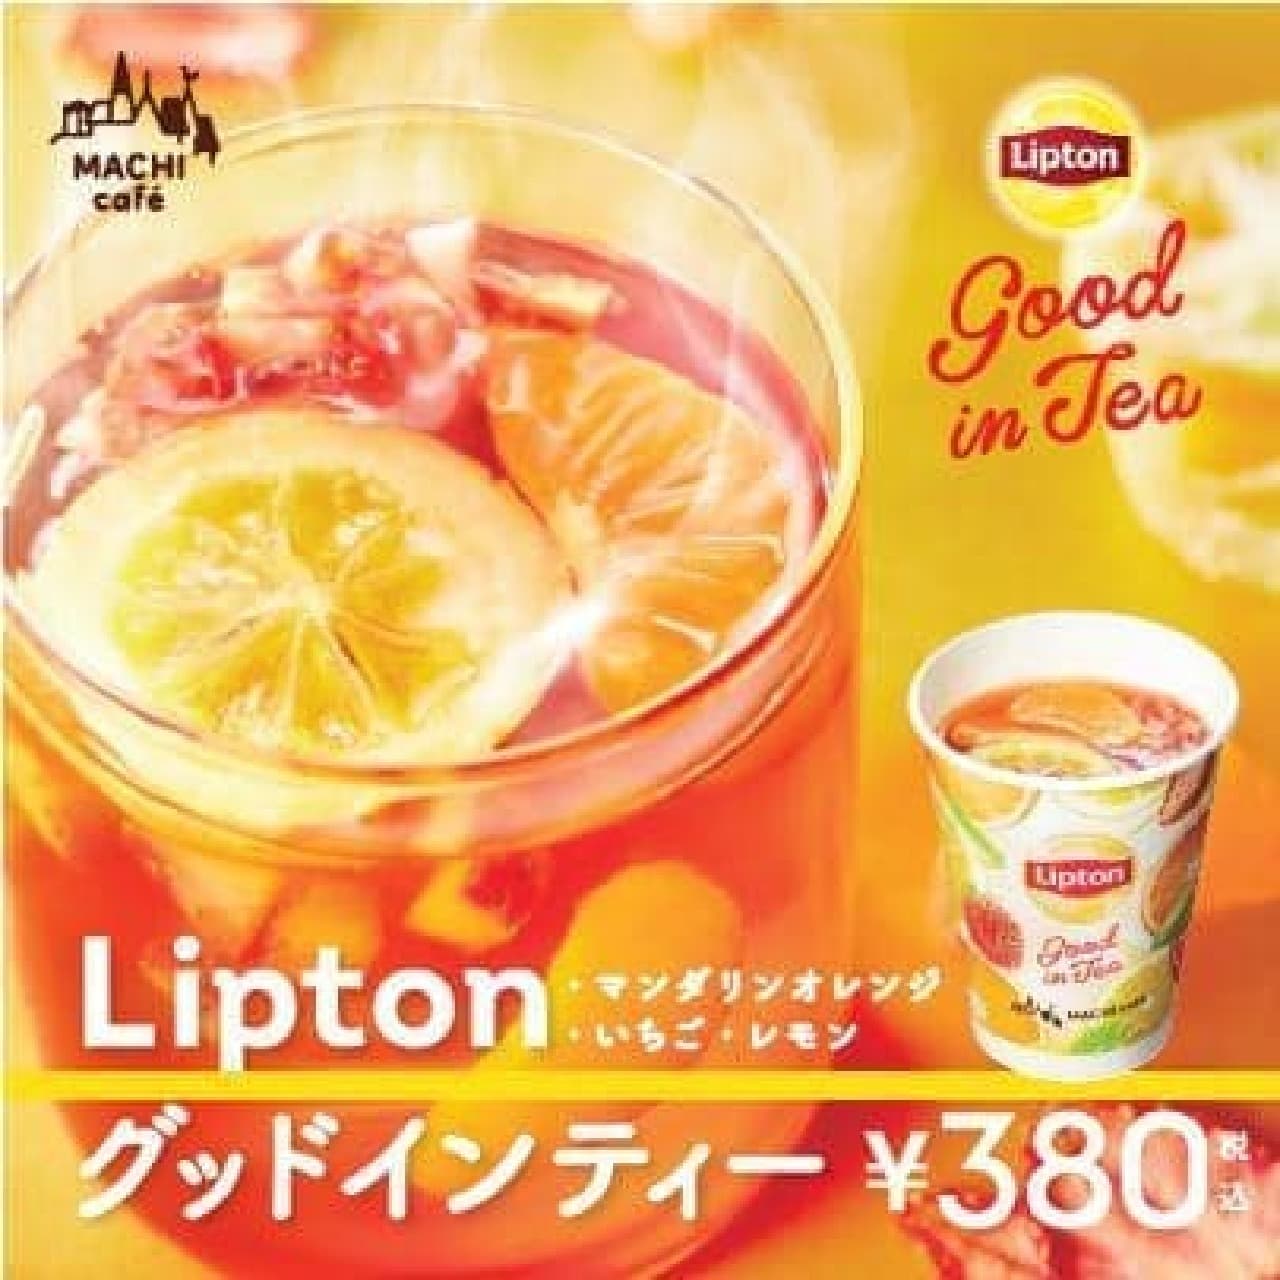 Lawson "MACHI cafe Lipton Good Inn Tea"